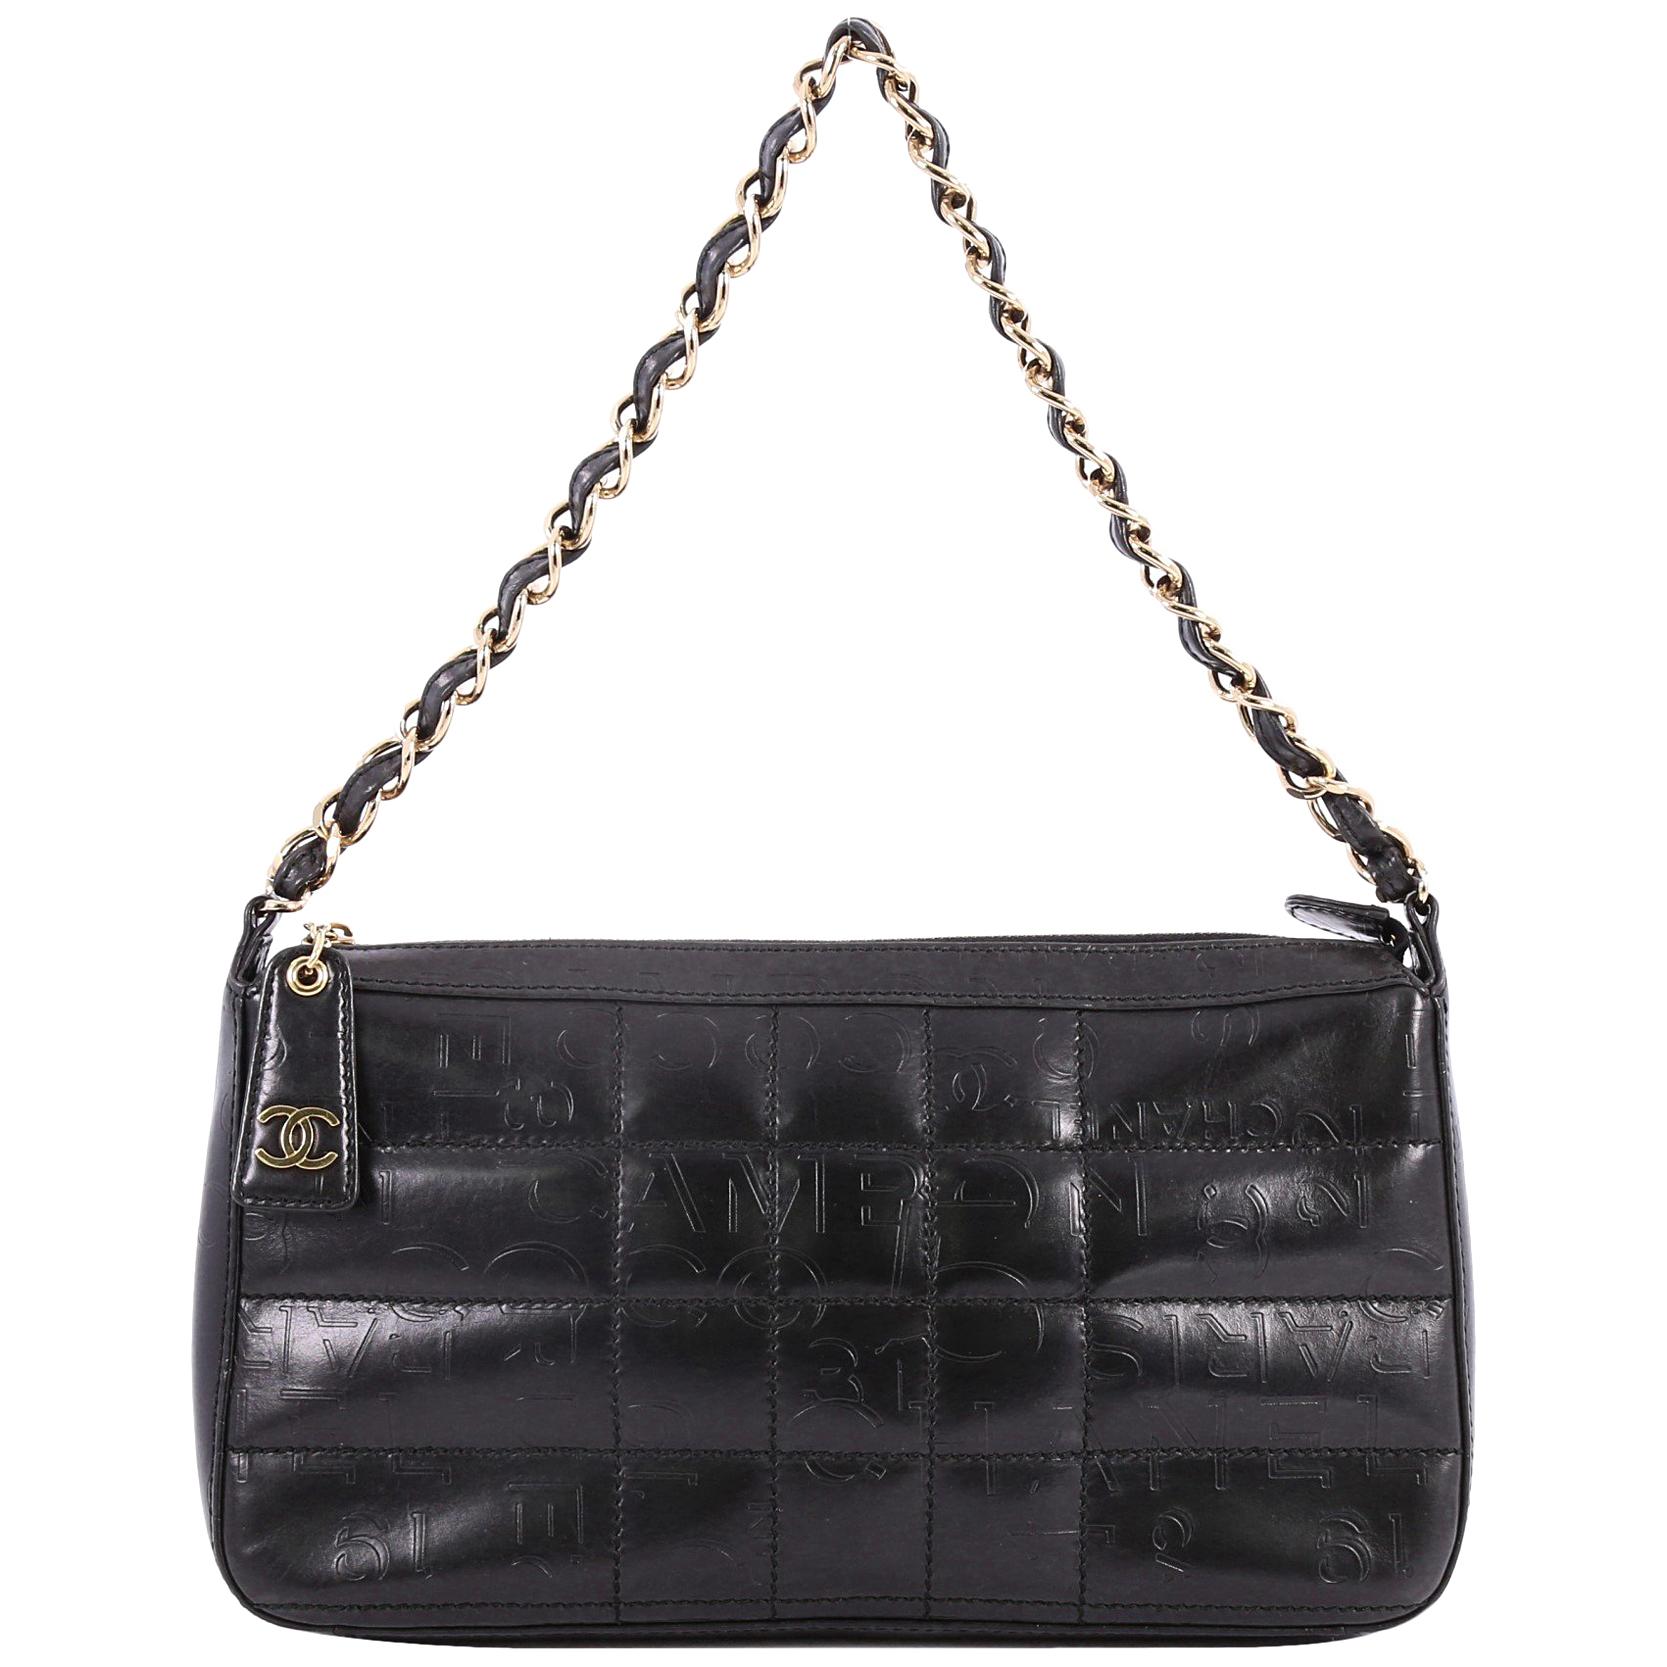 Chanel Square Quilt Shoulder Bag Embossed Lambskin Medium